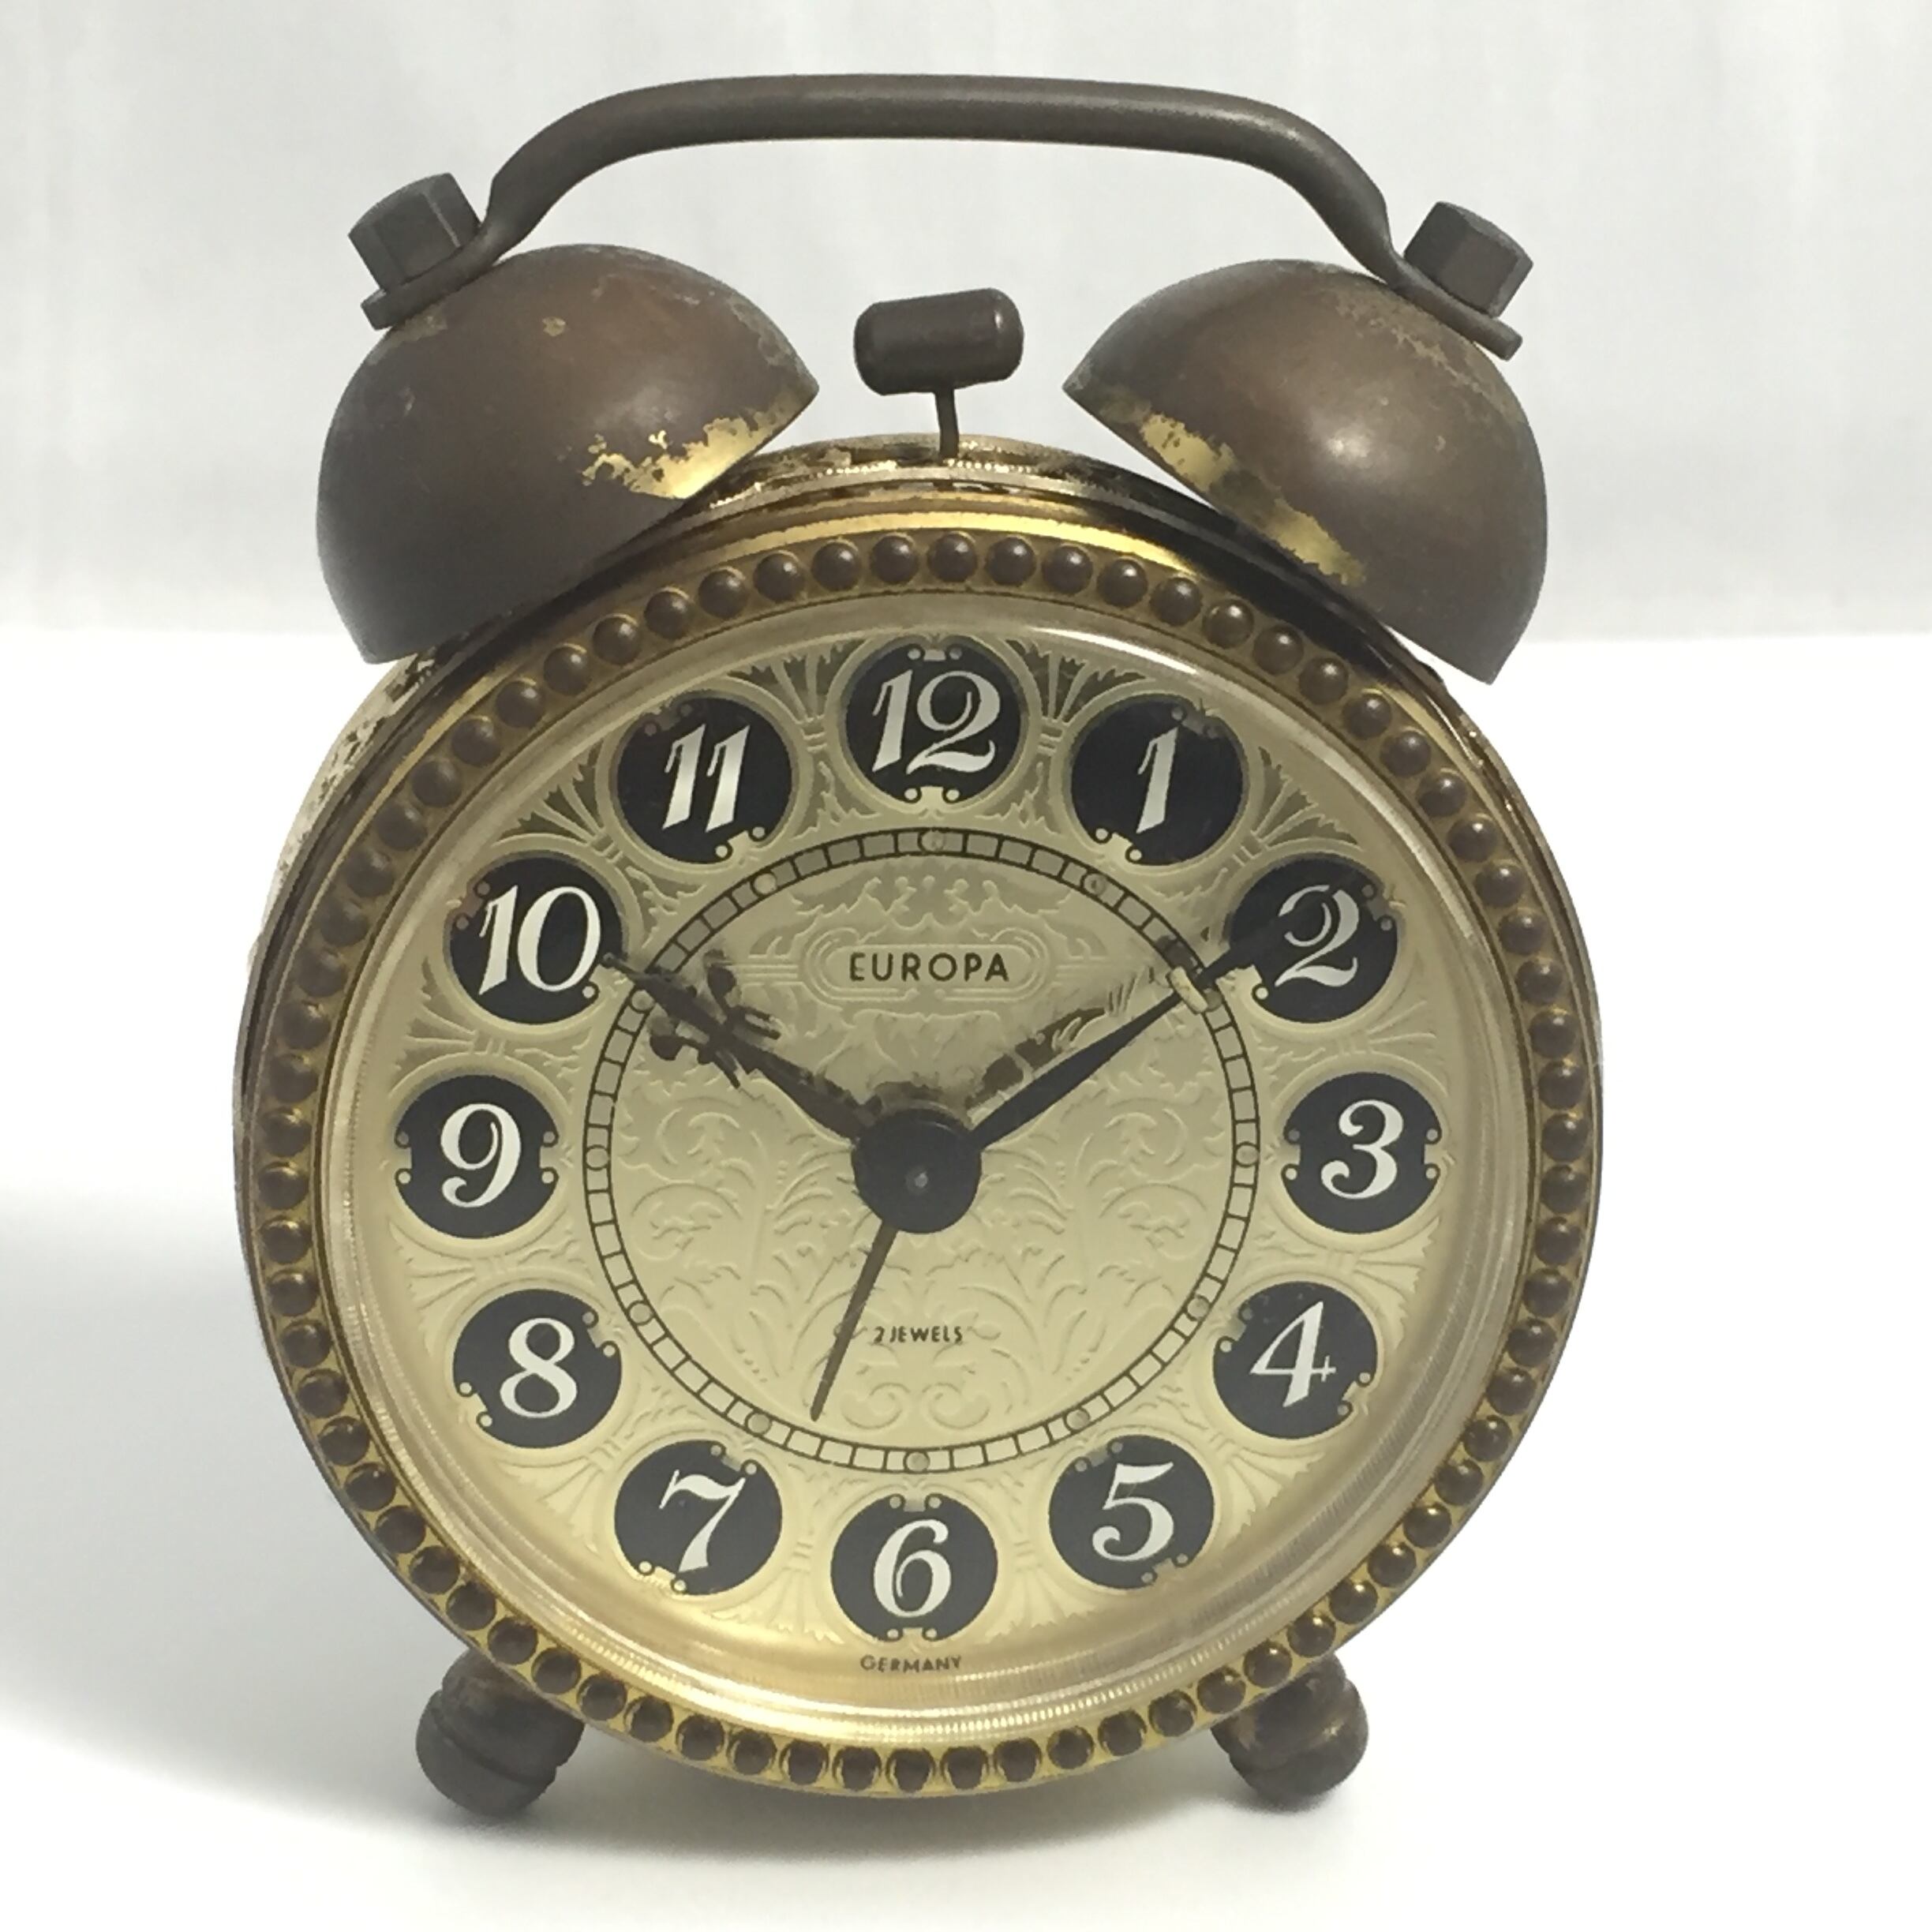 装飾頭丸形 舘本時計アンティーク - 掛時計/柱時計